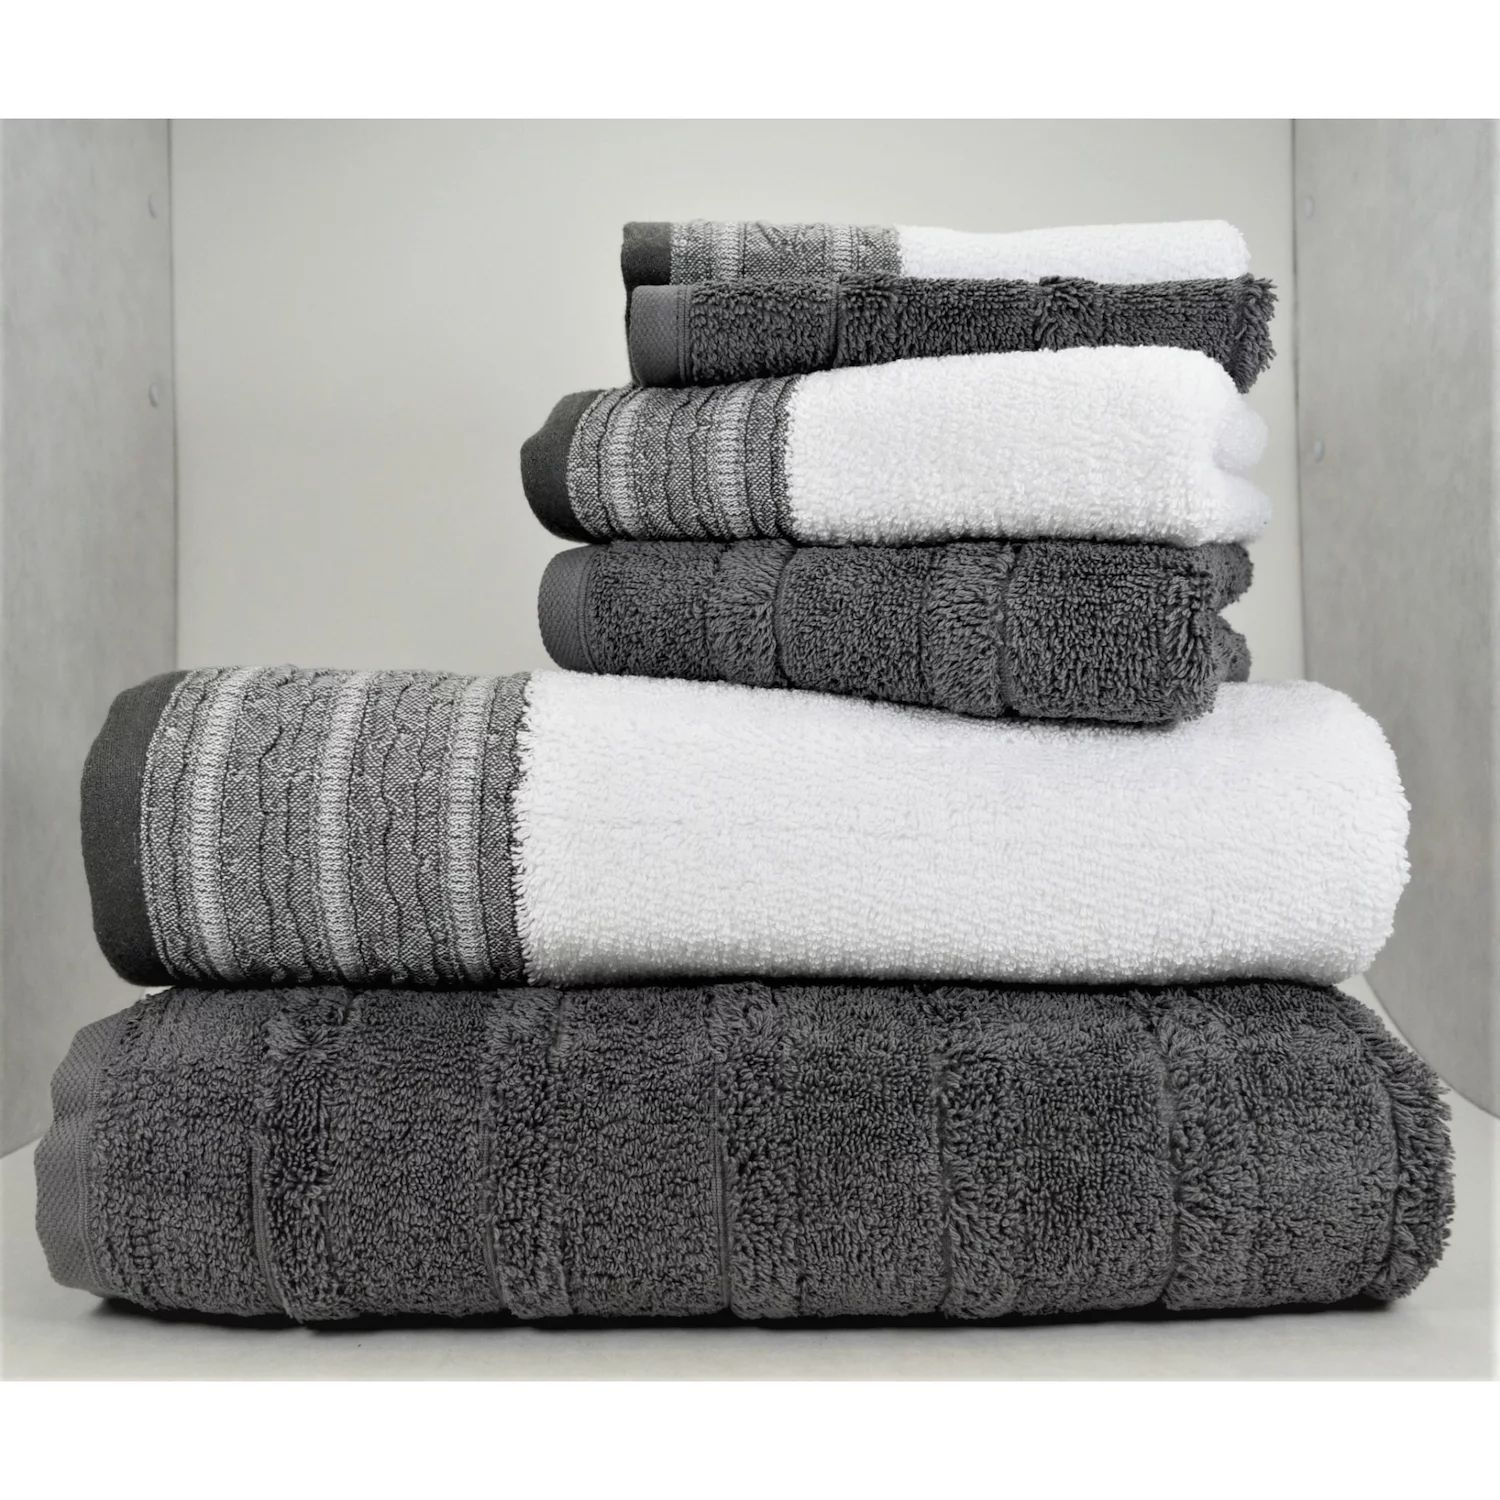 Классические турецкие полотенца из натурального хлопка с мягким впитывающим эффектом Carel and Garen, набор из 6 предметов: 2 банных полотенца, 2 полотенца для рук, 2 мочалки, серый 2pcs turkish towel set bath towel hand towel set hotel